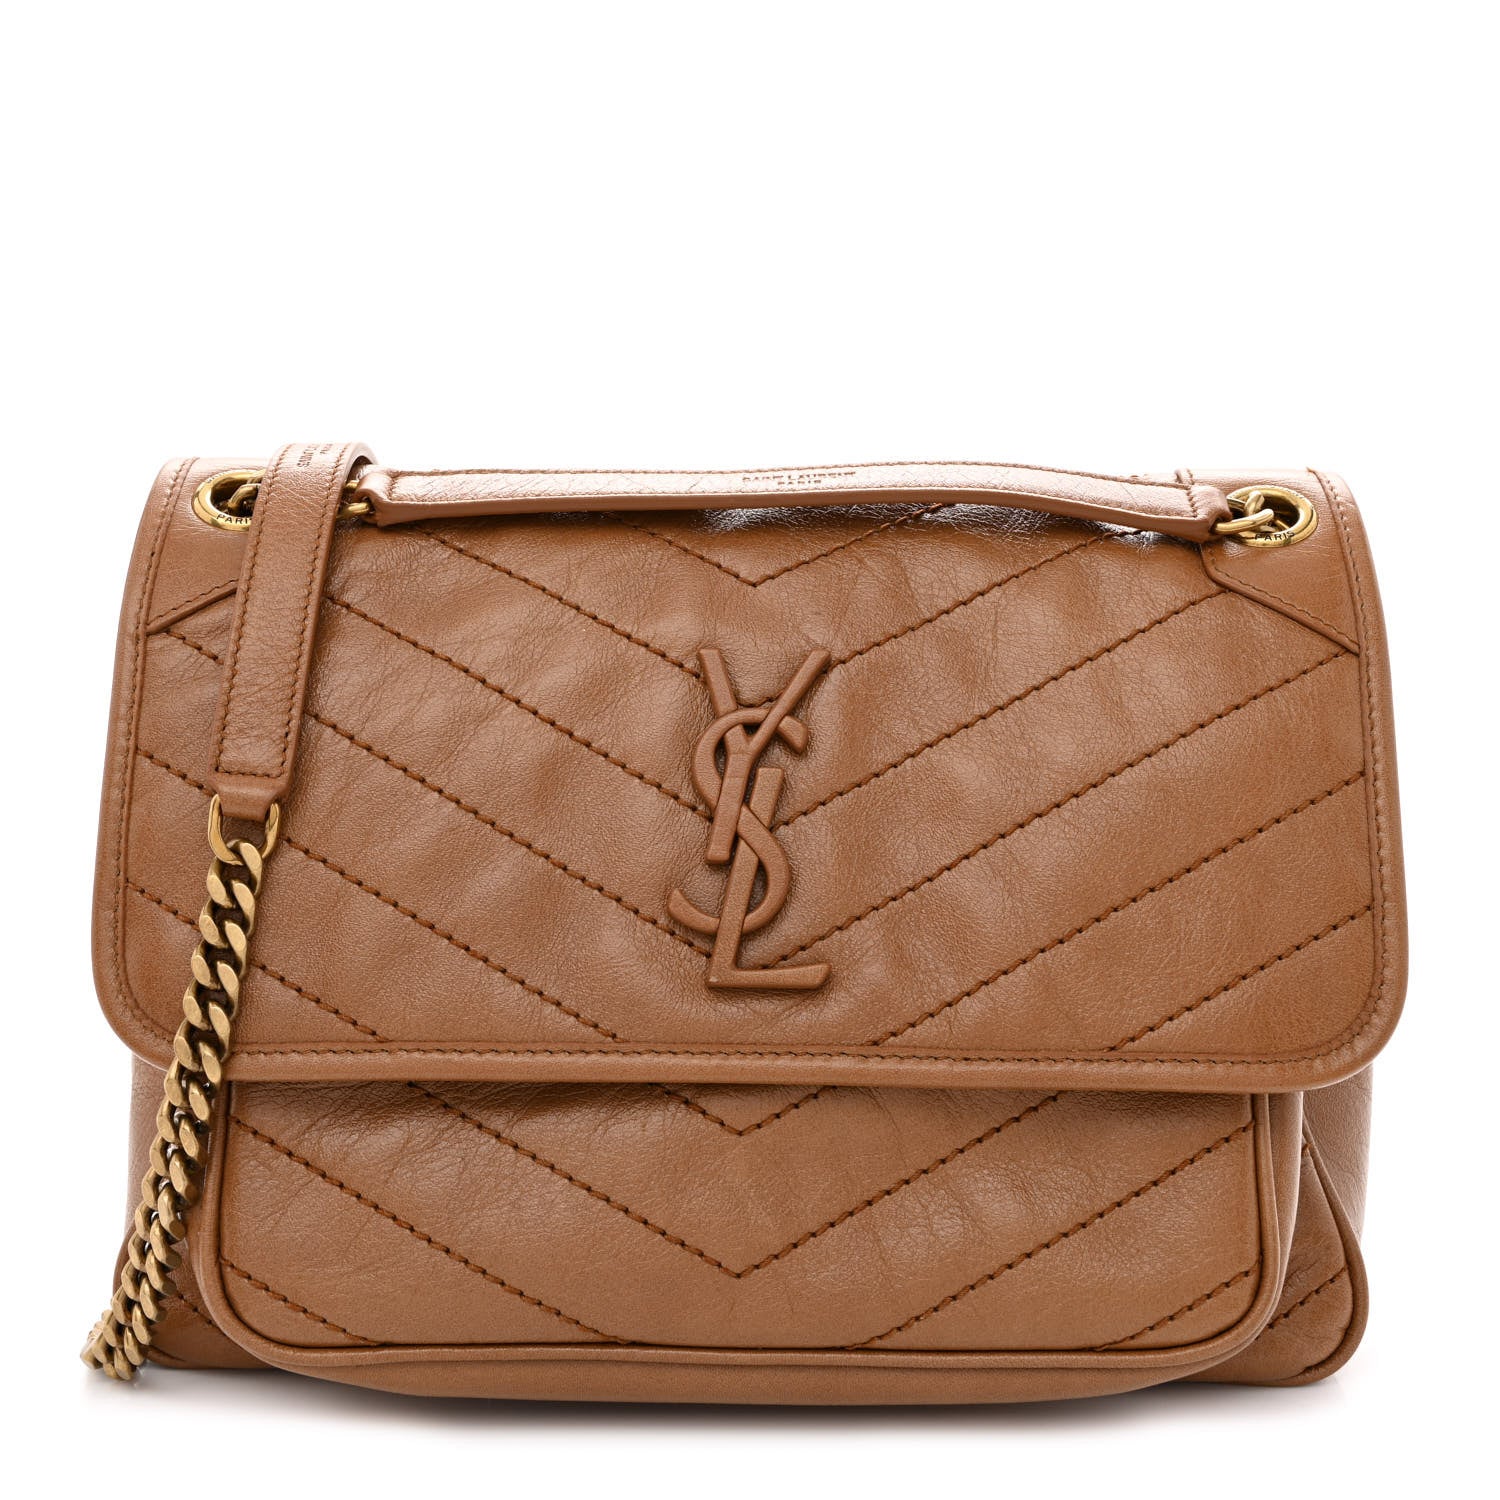 is ysl a luxury brand niki bag